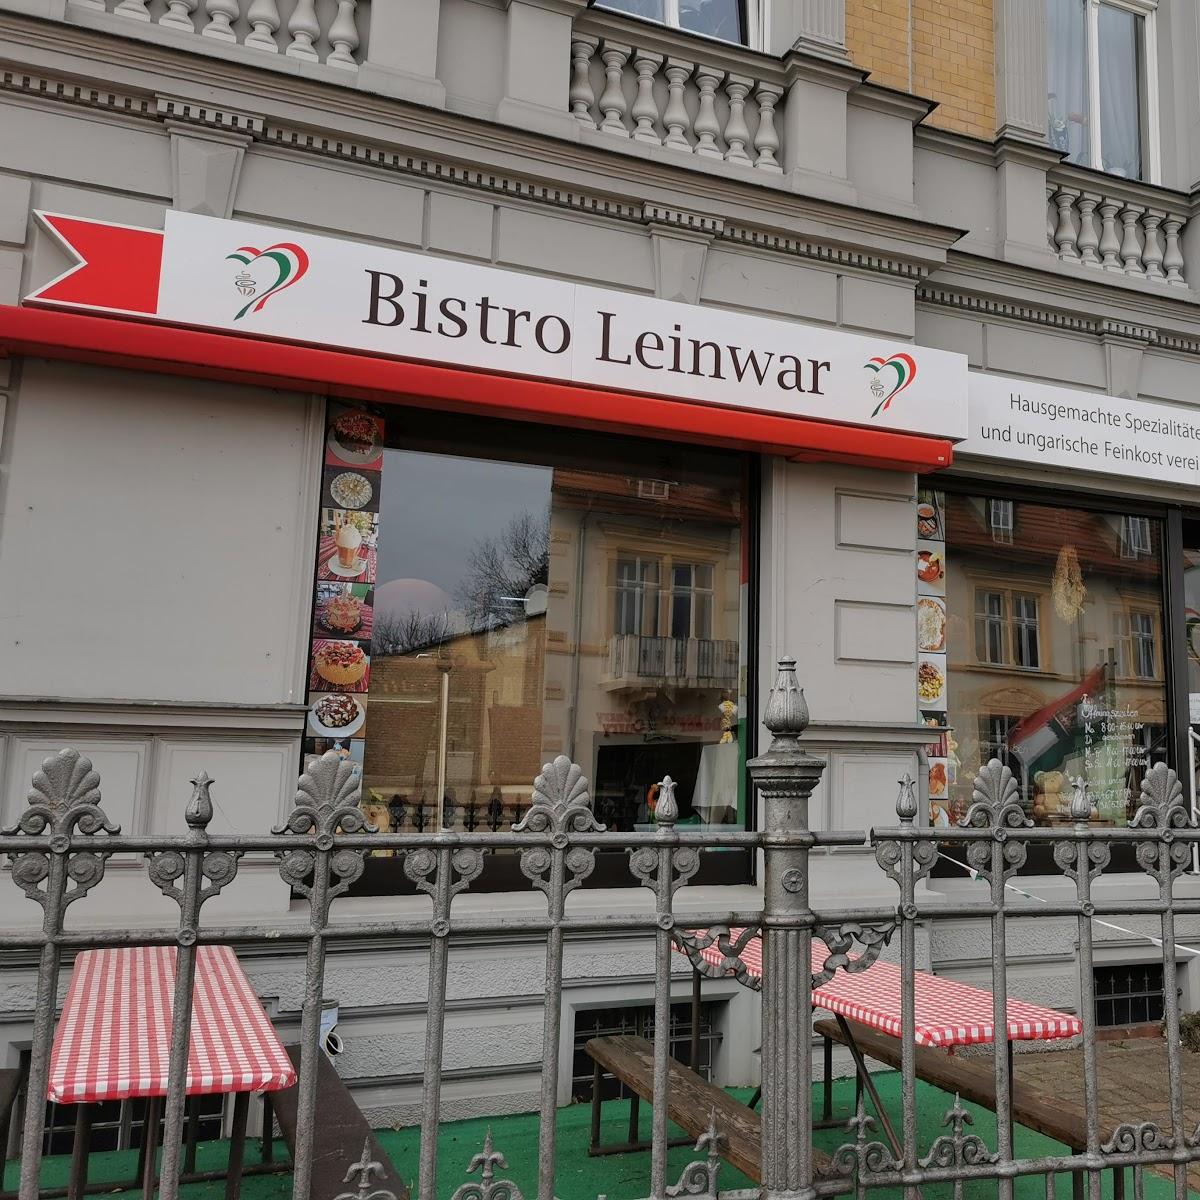 Restaurant "Bistro Leinwar" in  Baruth-Mark